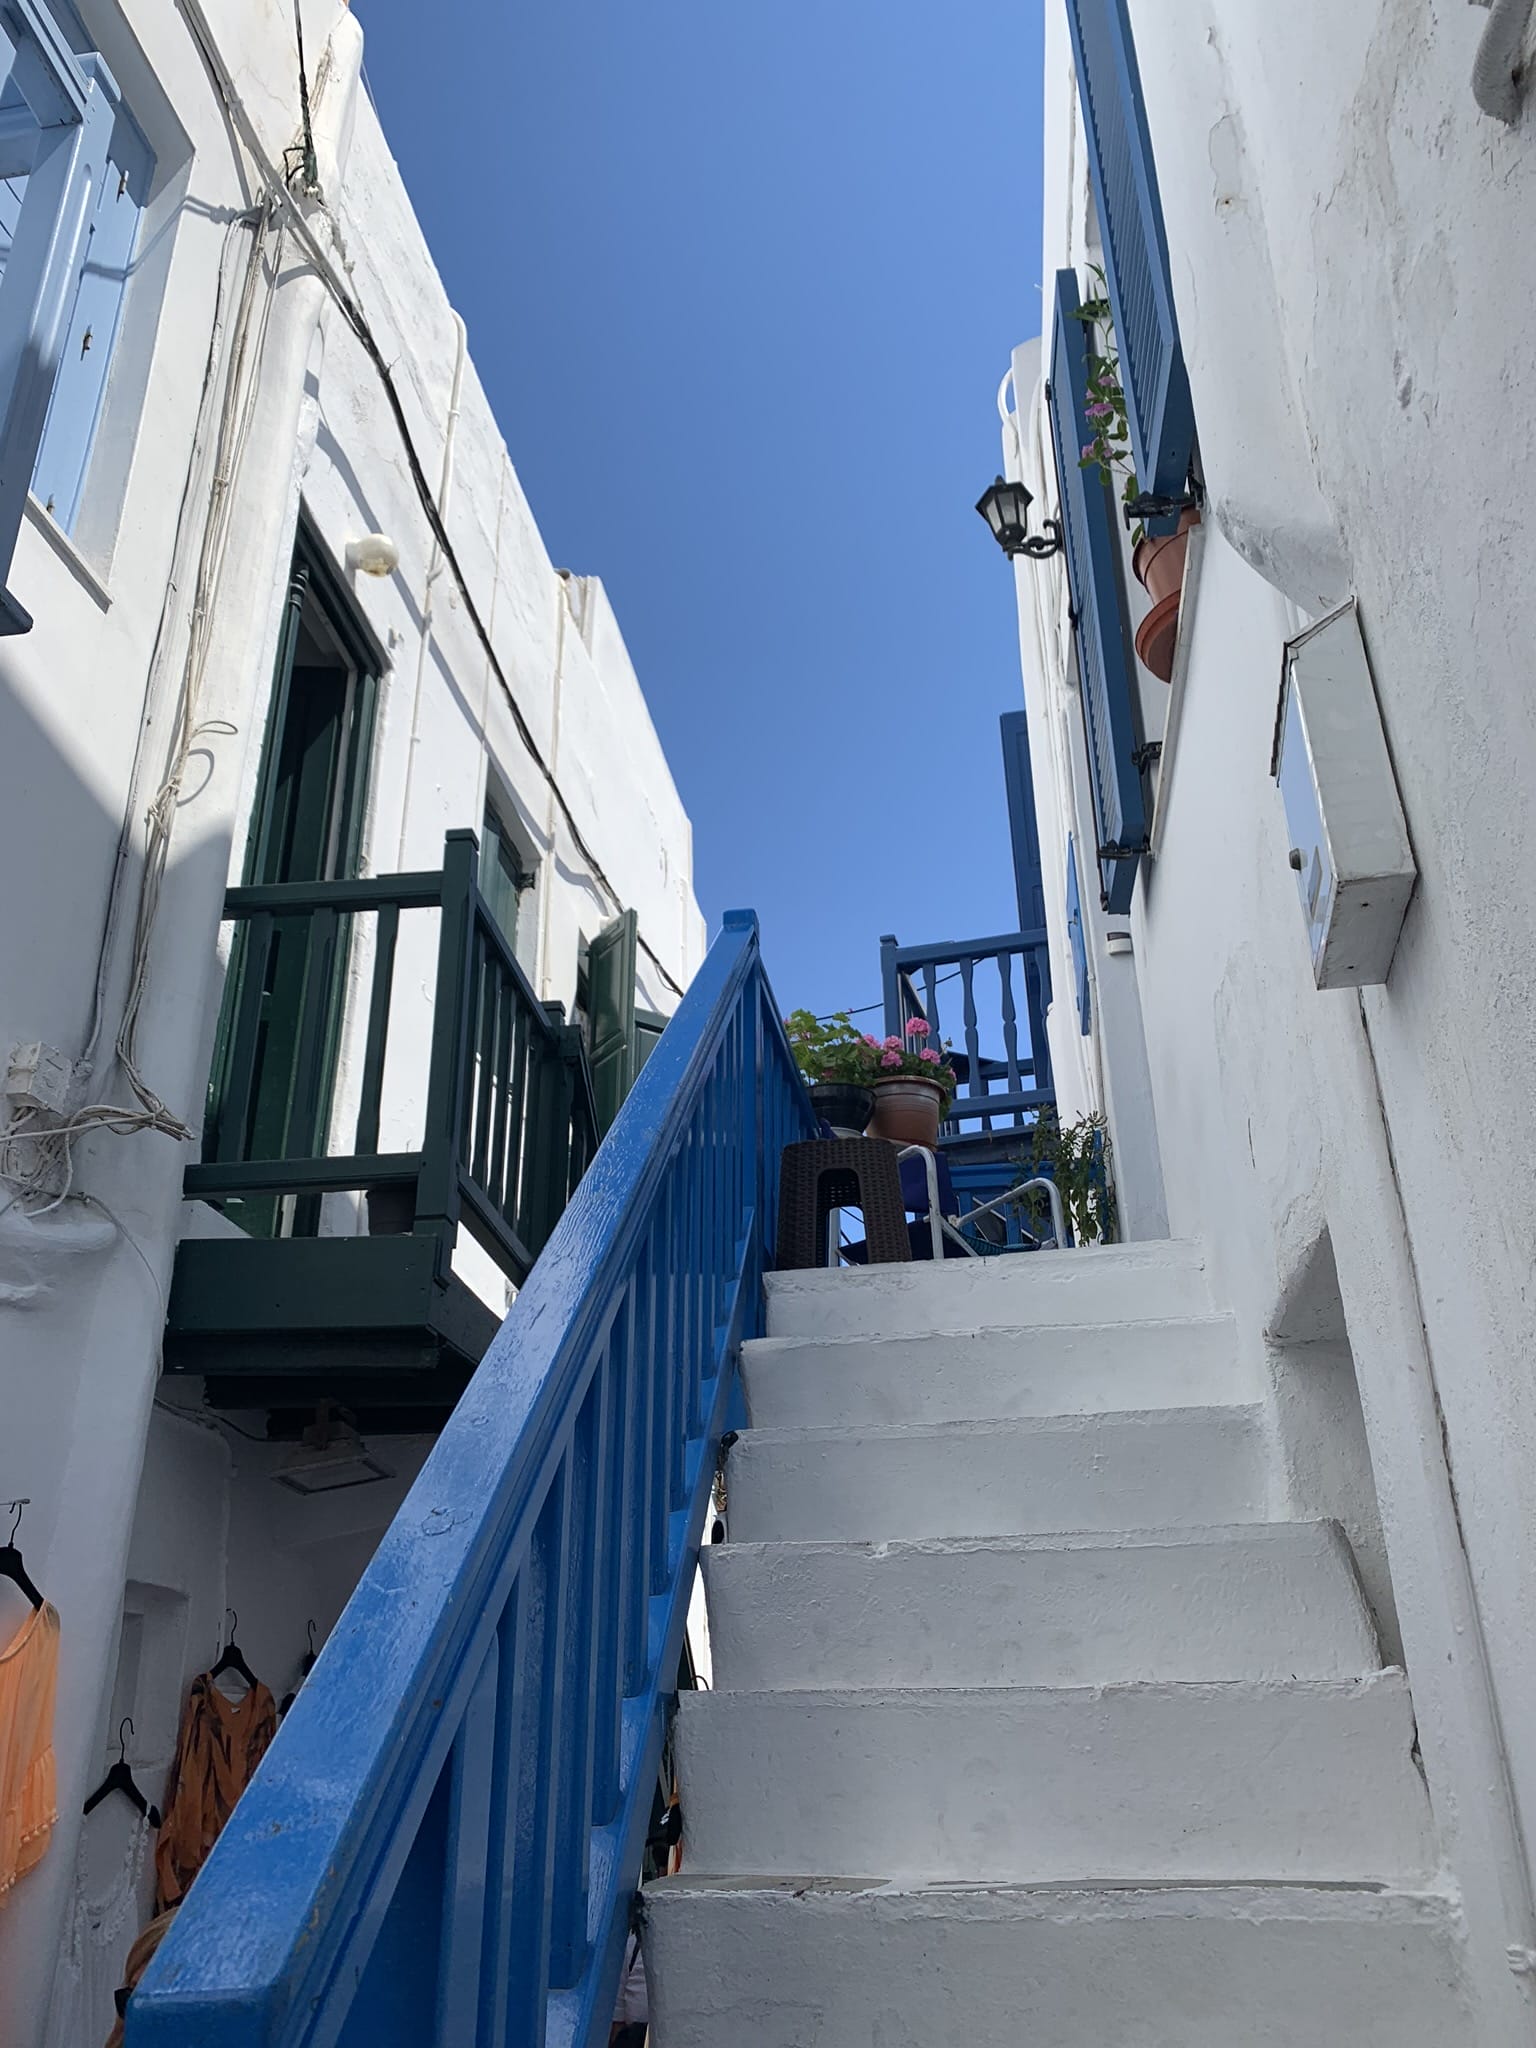 a side street in mykonos greece